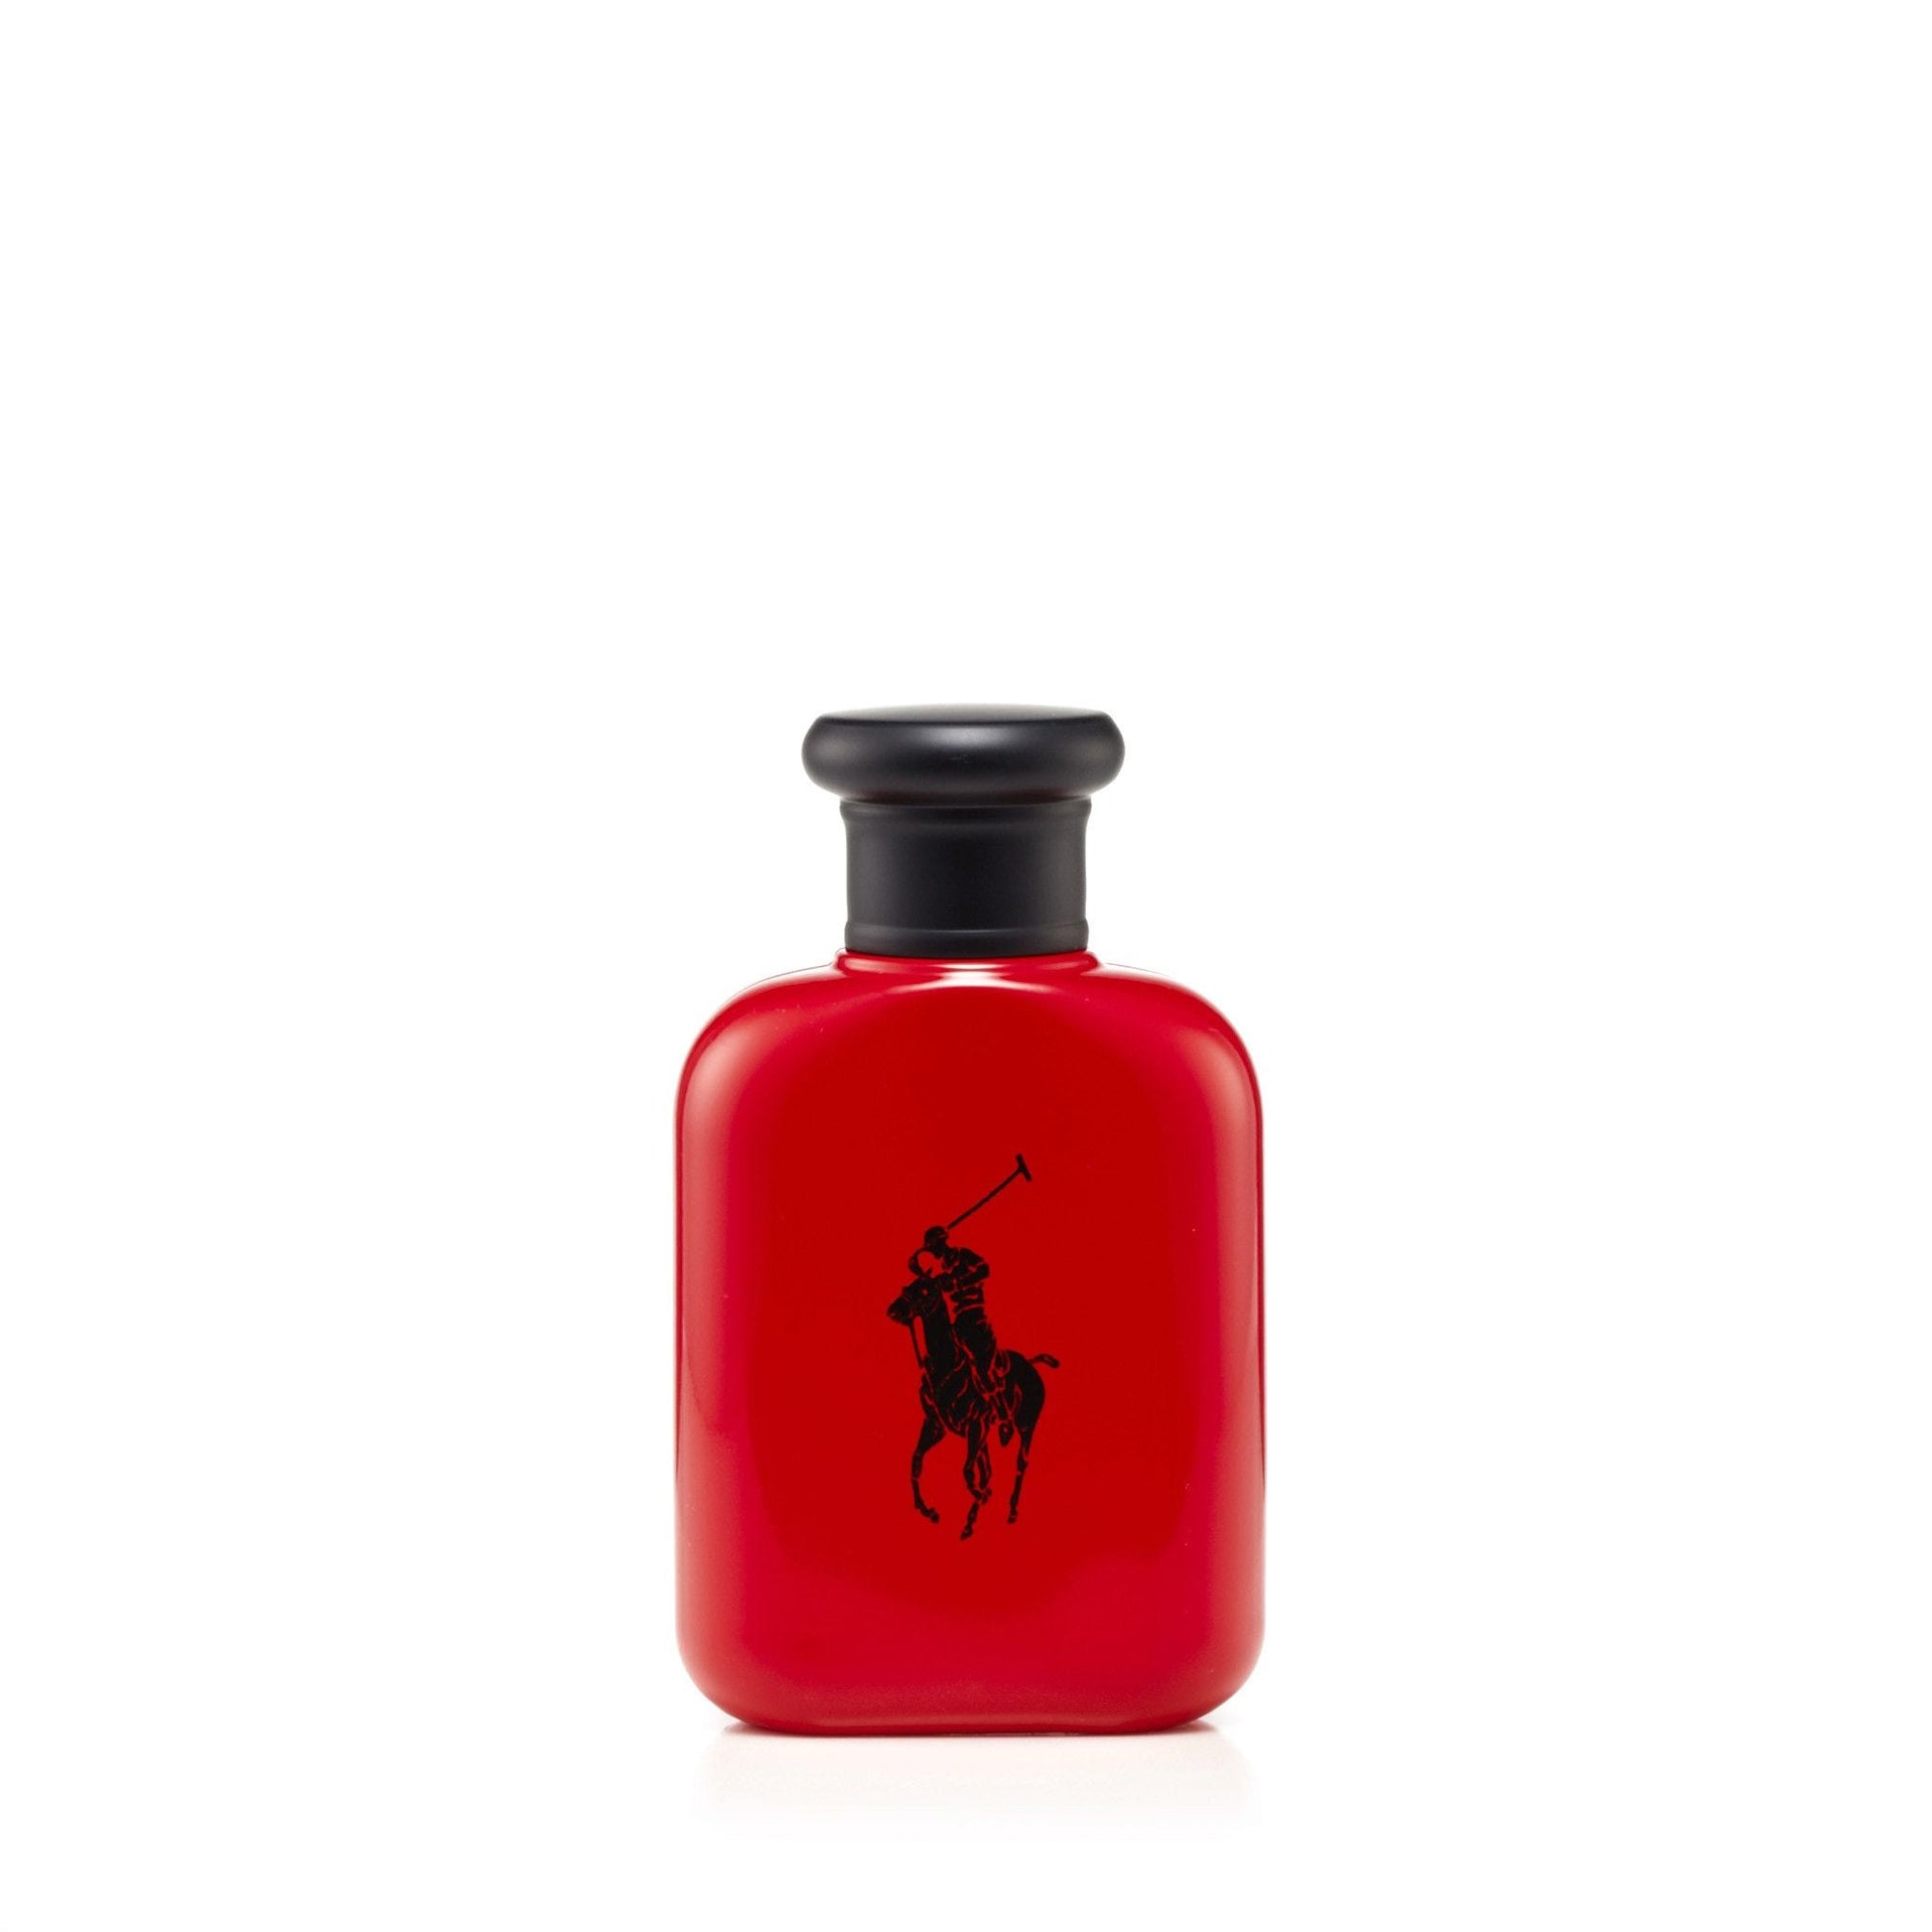 Polo Red Eau de Toilette Spray for Men by Ralph Lauren, Product image 2